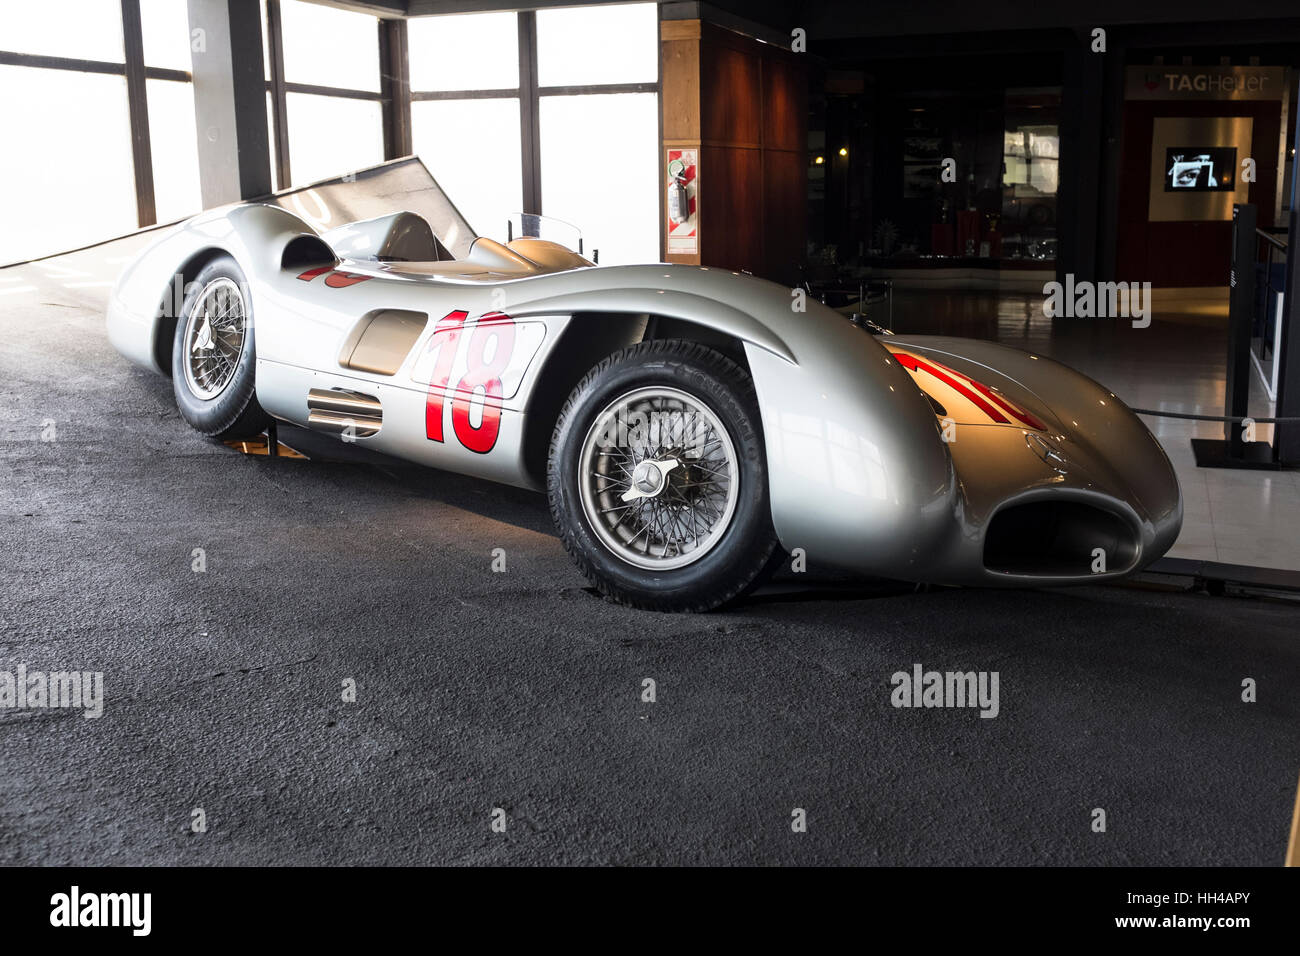 En el museo Juan Manuel Fangio dedicado a la vida y logros del legendario cinco veces Campeón del Mundo de F-1 en la pantalla de su Mercedes-Benz Foto de stock